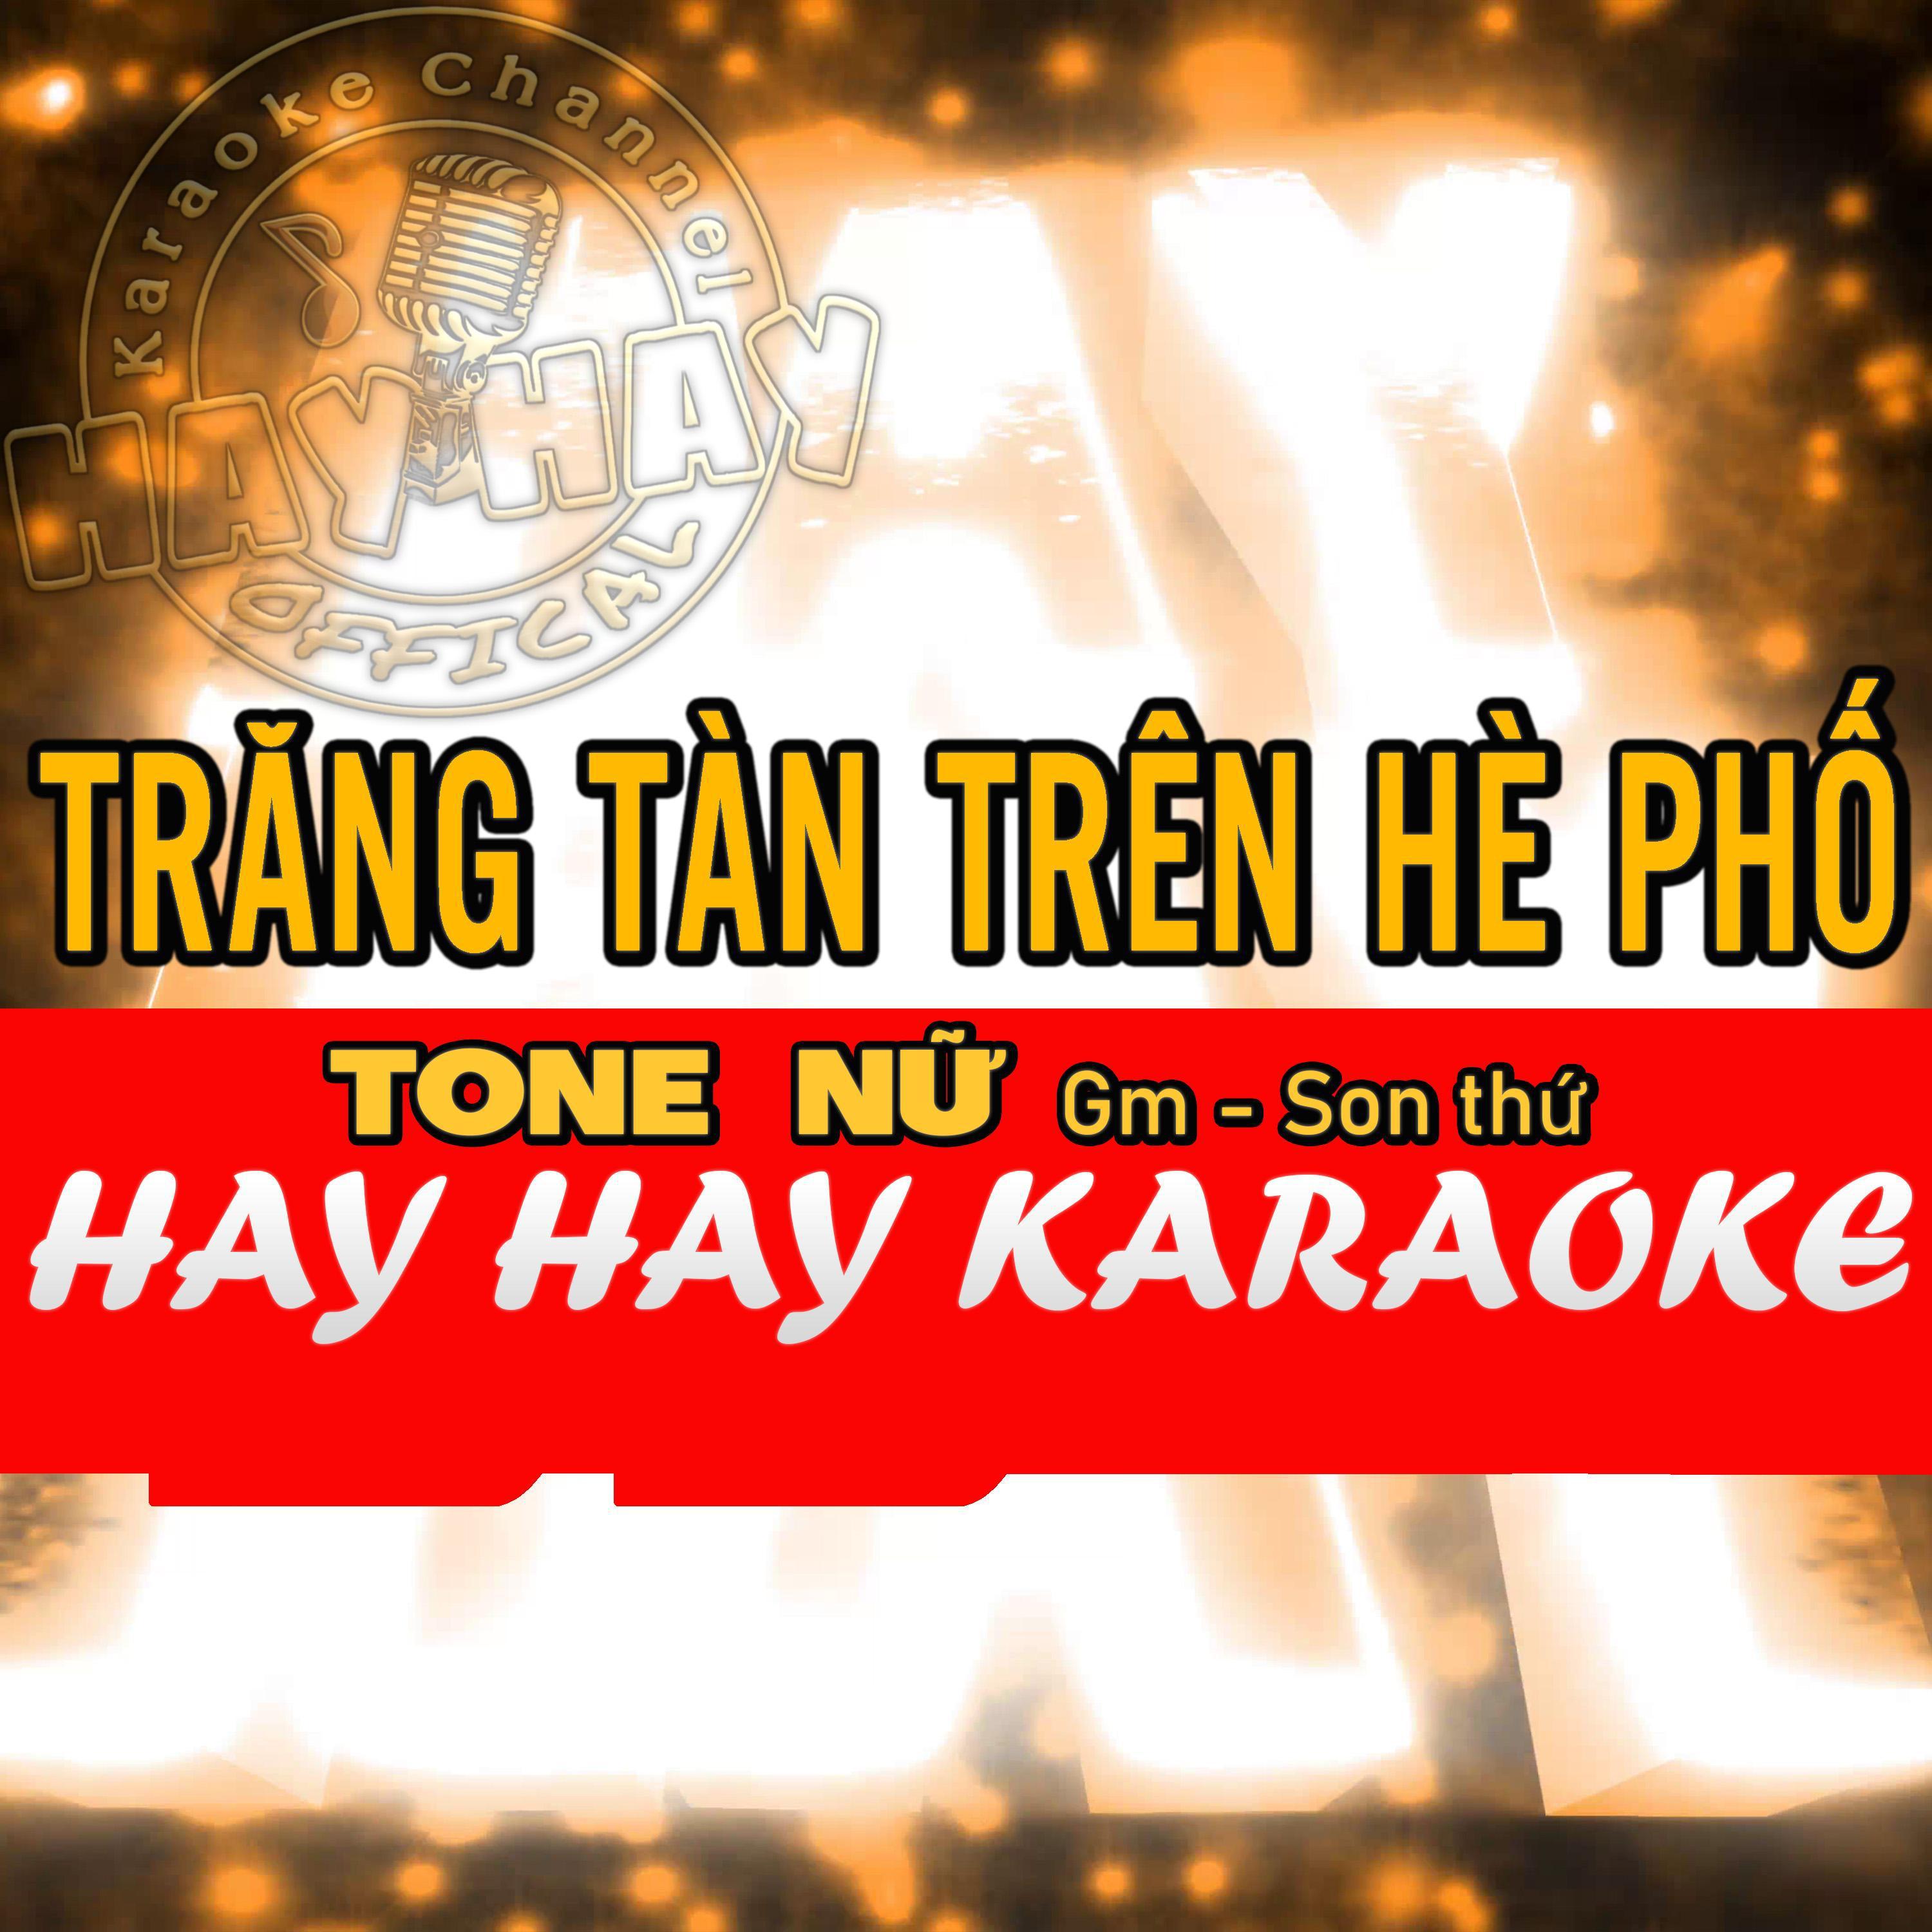 Tuấn Thành - TRĂNG TÀN TRÊN HÈ PHỐ (Karaoke tone Nữ Gm)